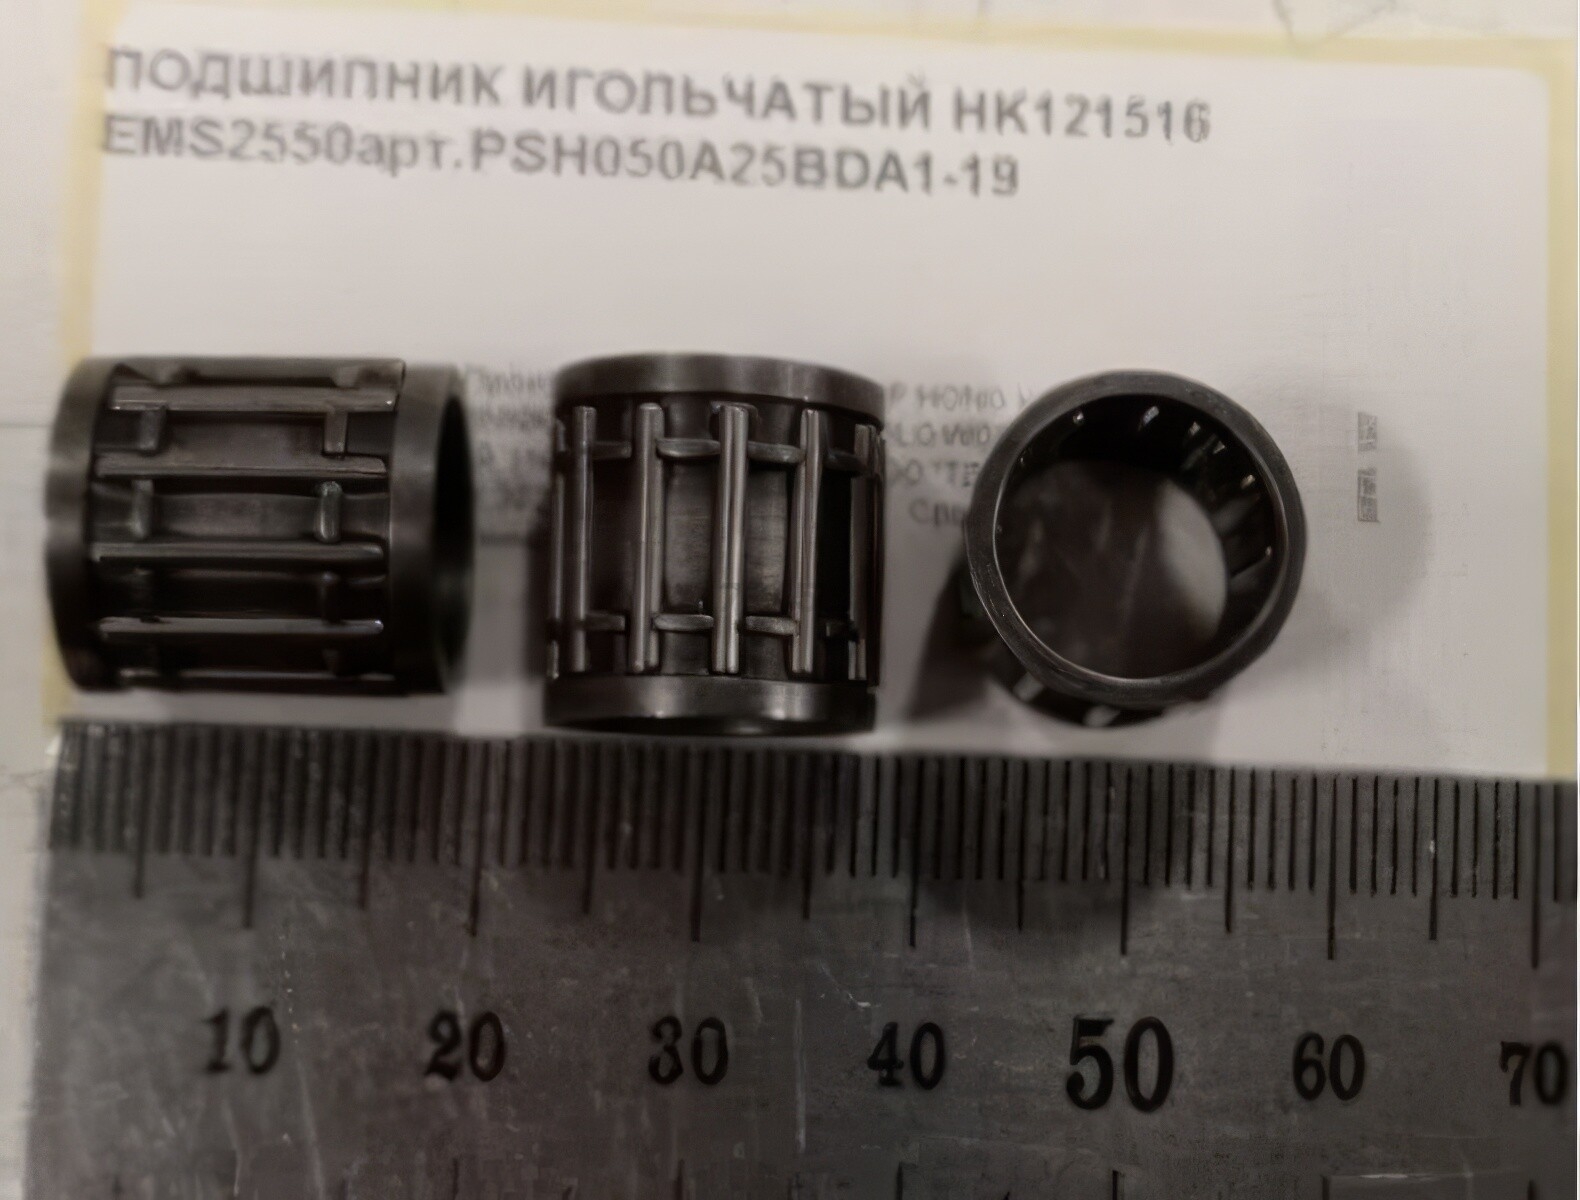 Подшипник игольчатый HK121516 для ножниц листовых WORTEX EMS2550 (PSH050A25BDA1-19) - Фото 2